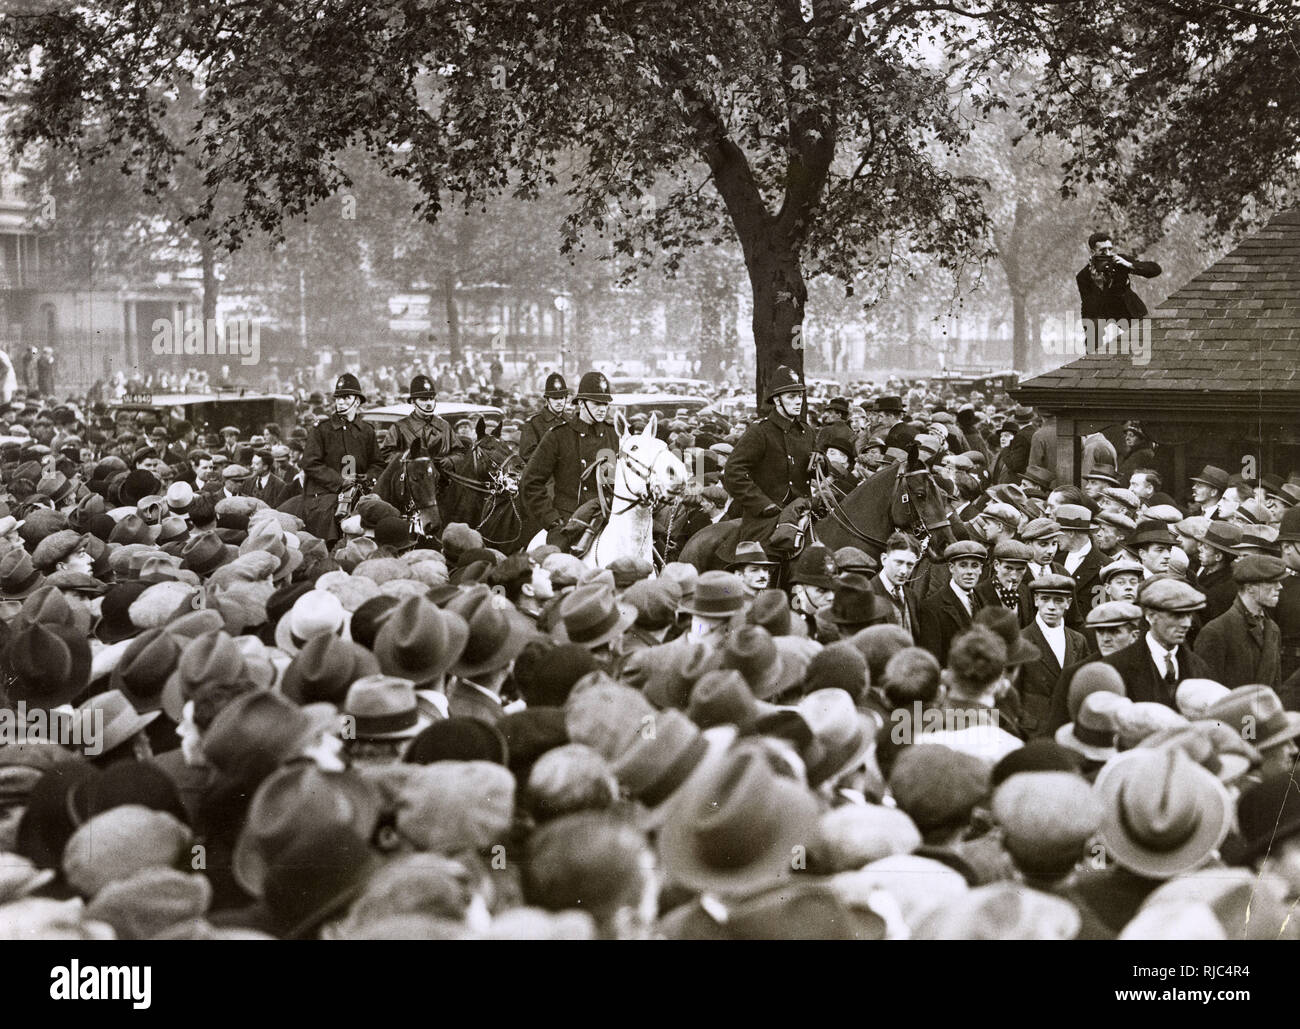 La faim de Mars Septembre - Octobre 1932 a été le plus grand d'une série de marches de la faim en Grande-Bretagne dans les années 1920 et 1930. Chômeurs, hommes et femmes, qui ont marché de toutes les régions du pays, organiser une manifestation de masse à Hyde Park, Londres - une escorte de la police montée avec certains des manifestants - 27 octobre 1932. Banque D'Images